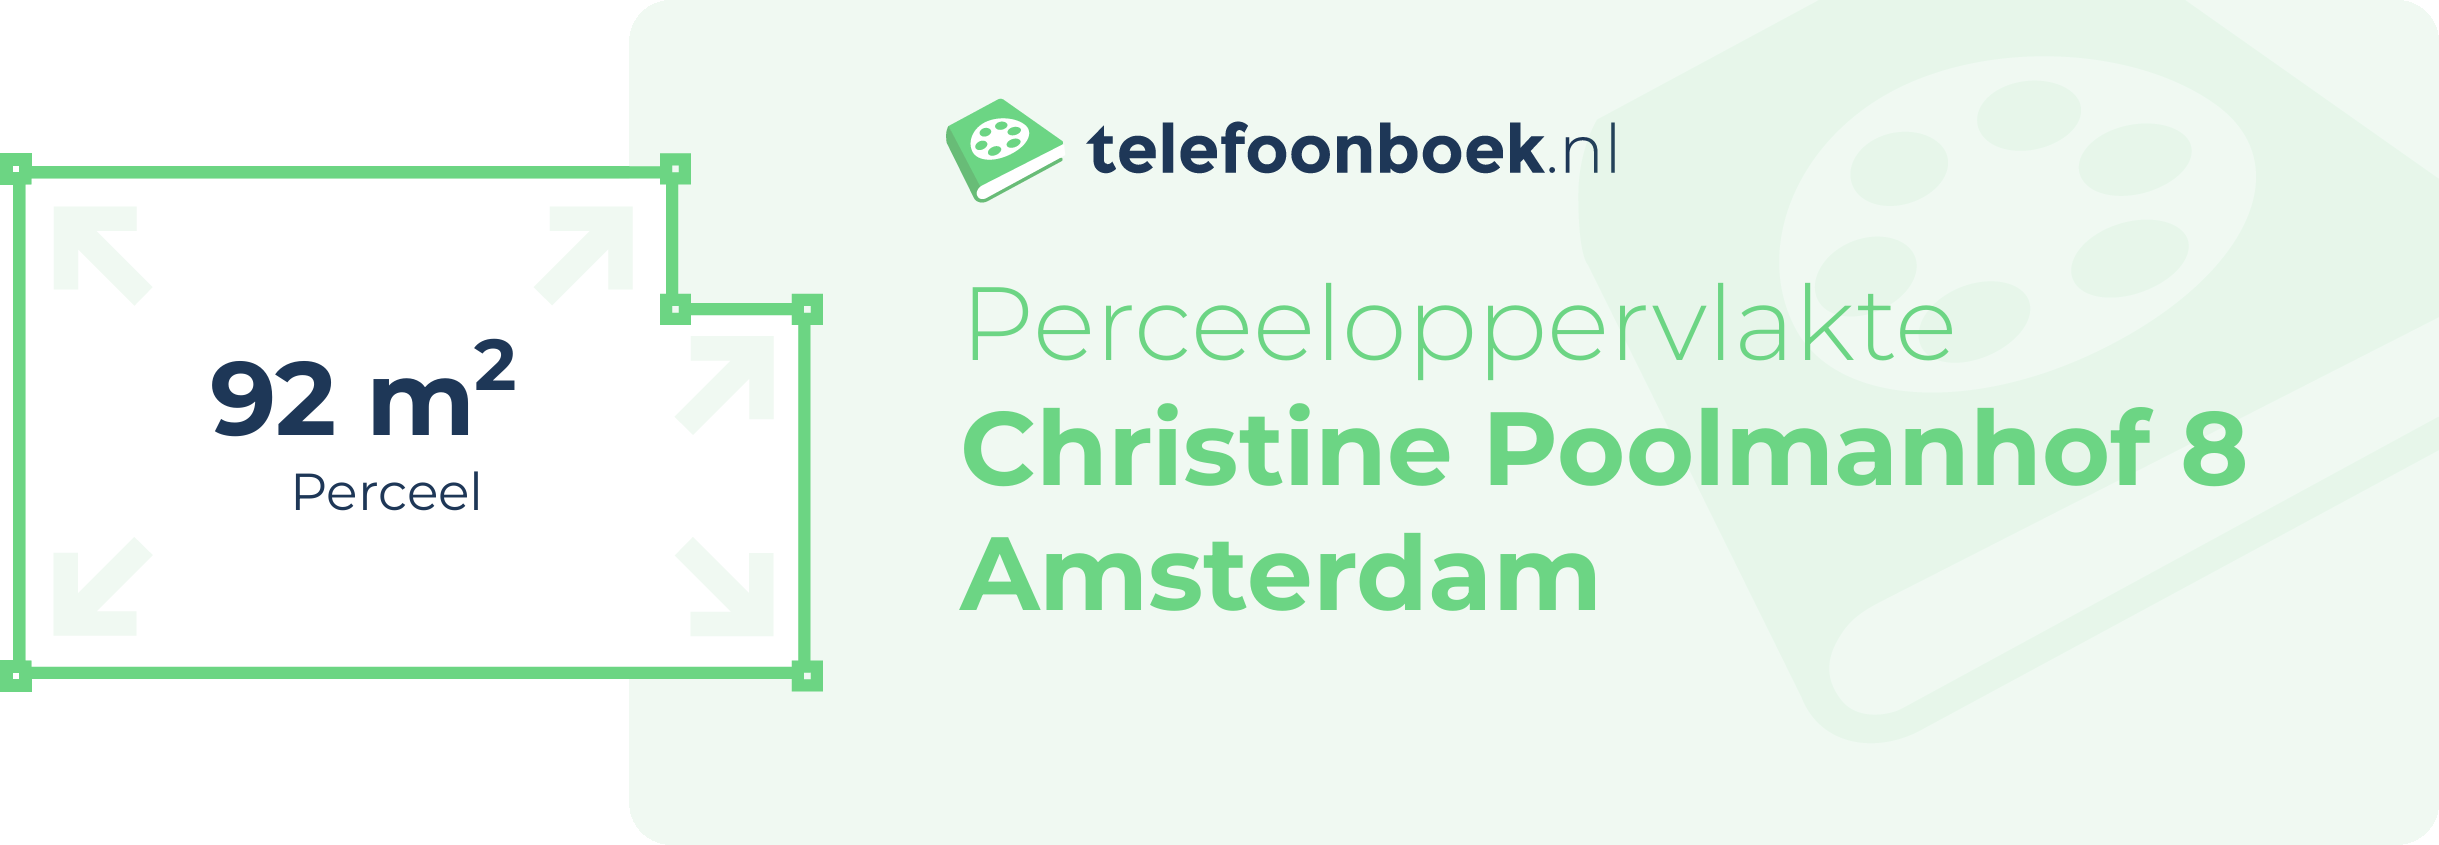 Perceeloppervlakte Christine Poolmanhof 8 Amsterdam